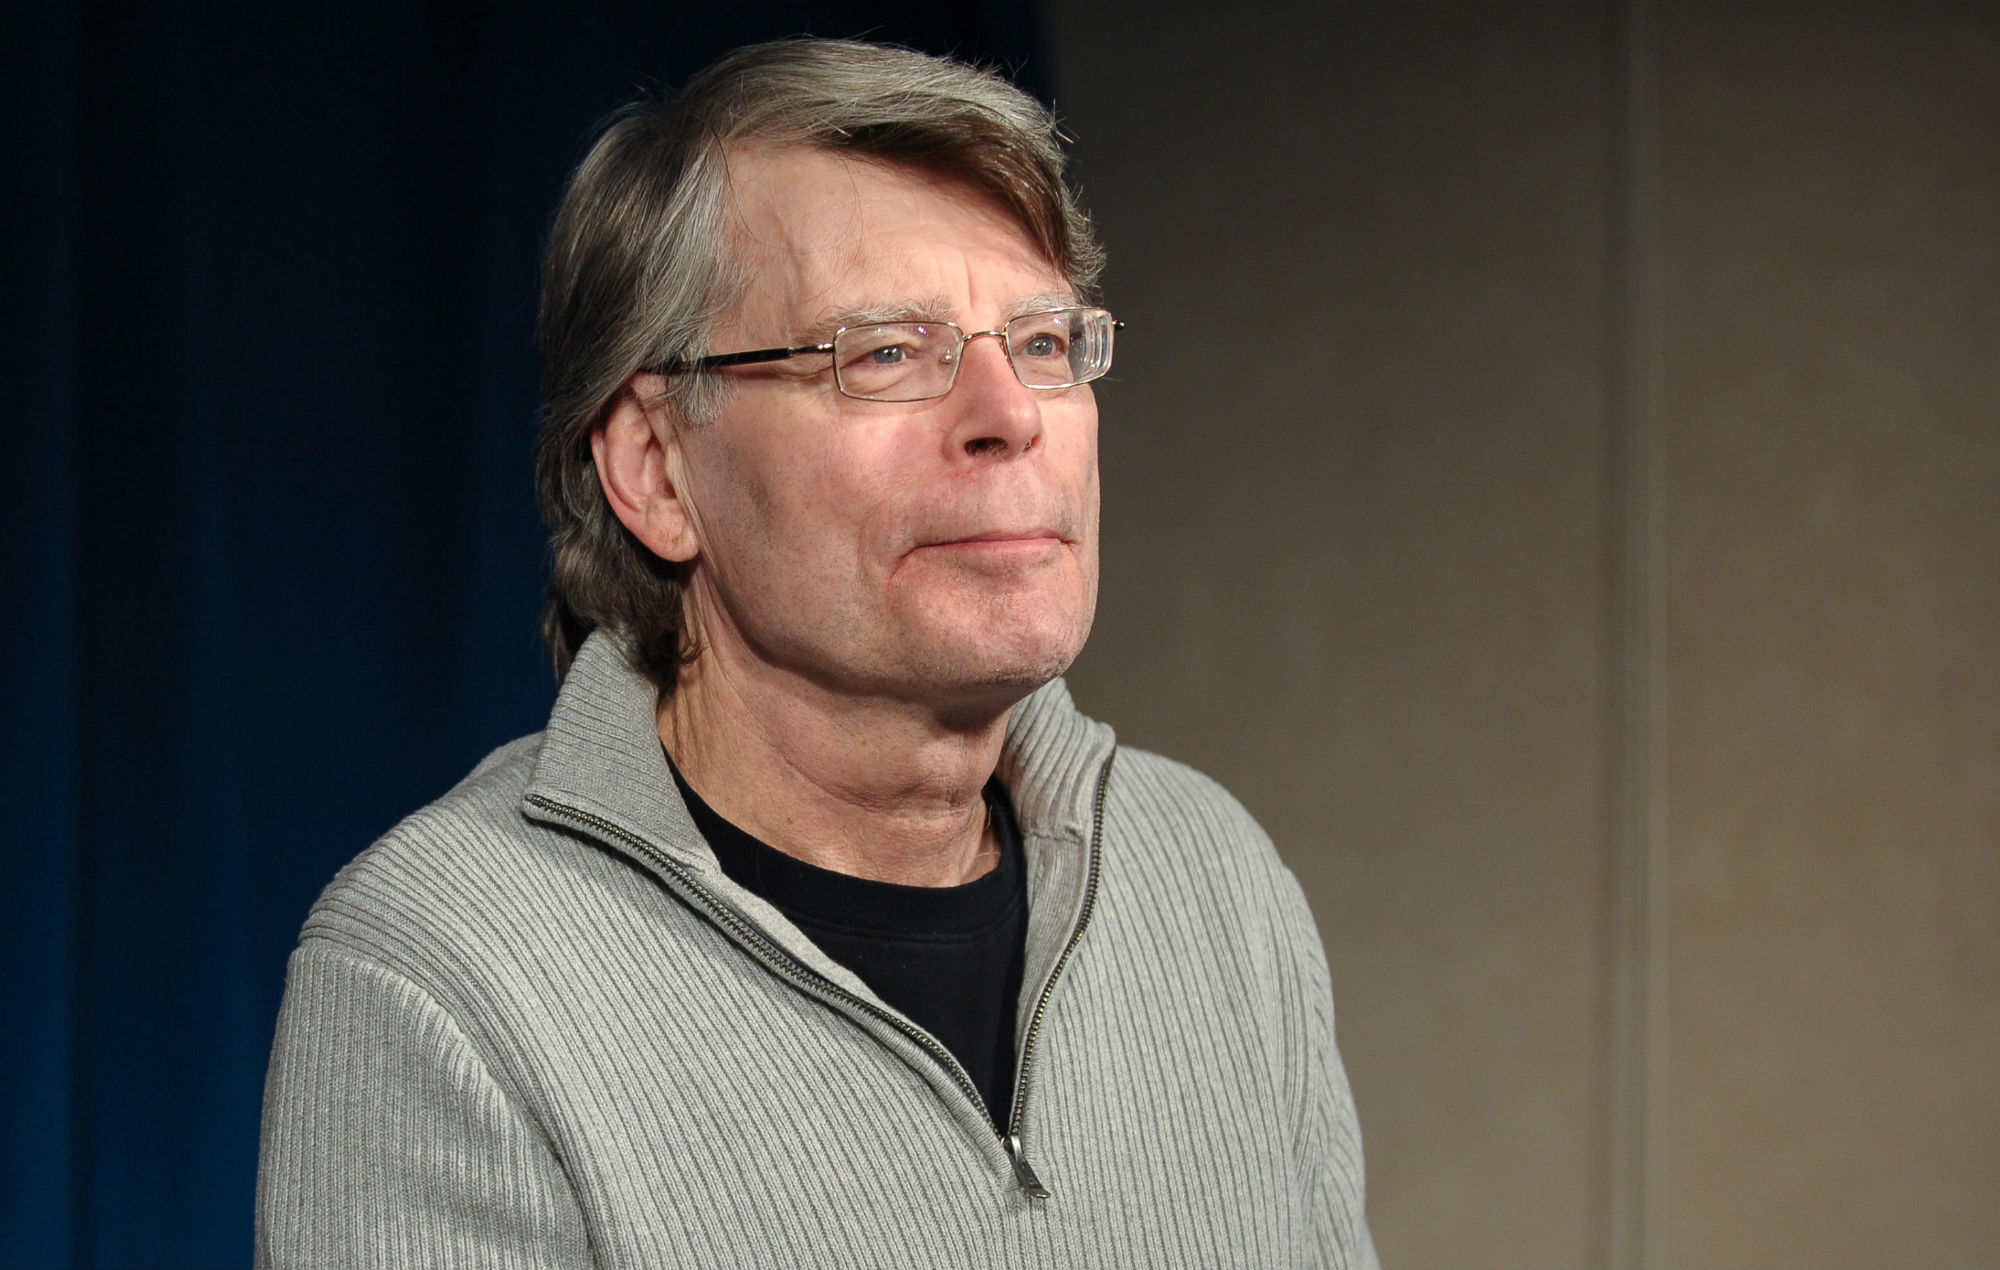 Foto do autor Stephen King. Stephen é um homem branco de 73 anos, com os cabelos levemente grisalhos. Ele usa um moletom cinza com uma camiseta preta por baixo. Possui óculos retangulares. 